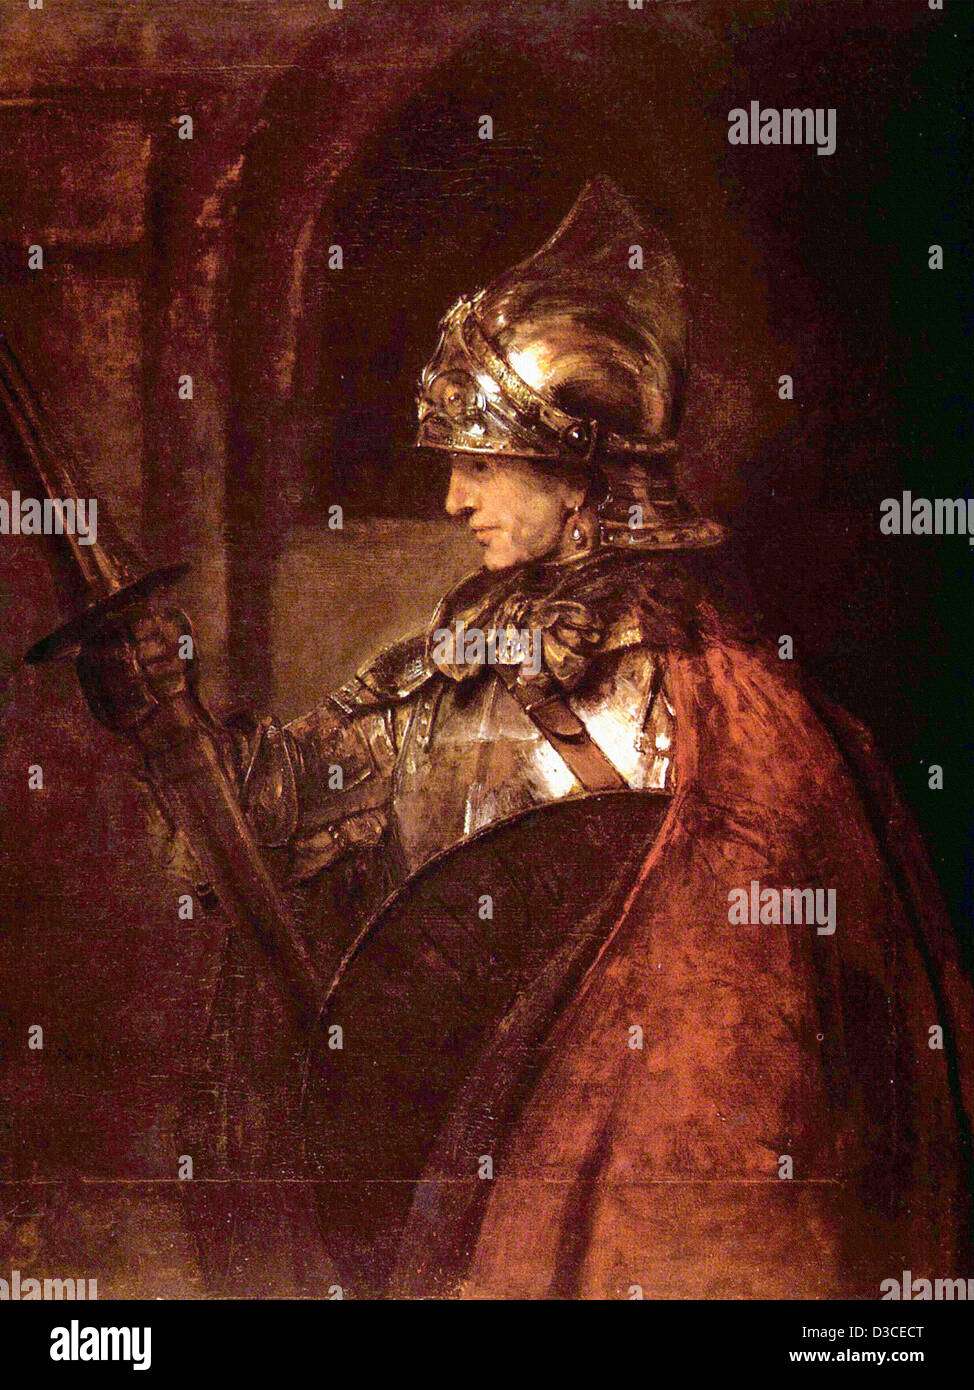 Rembrandt van Rijn, ein Mann in Rüstung. 1655-Öl auf Leinwand. Kelvingrove Art Gallery and Museum, Glasgow. Barocke. Stockfoto